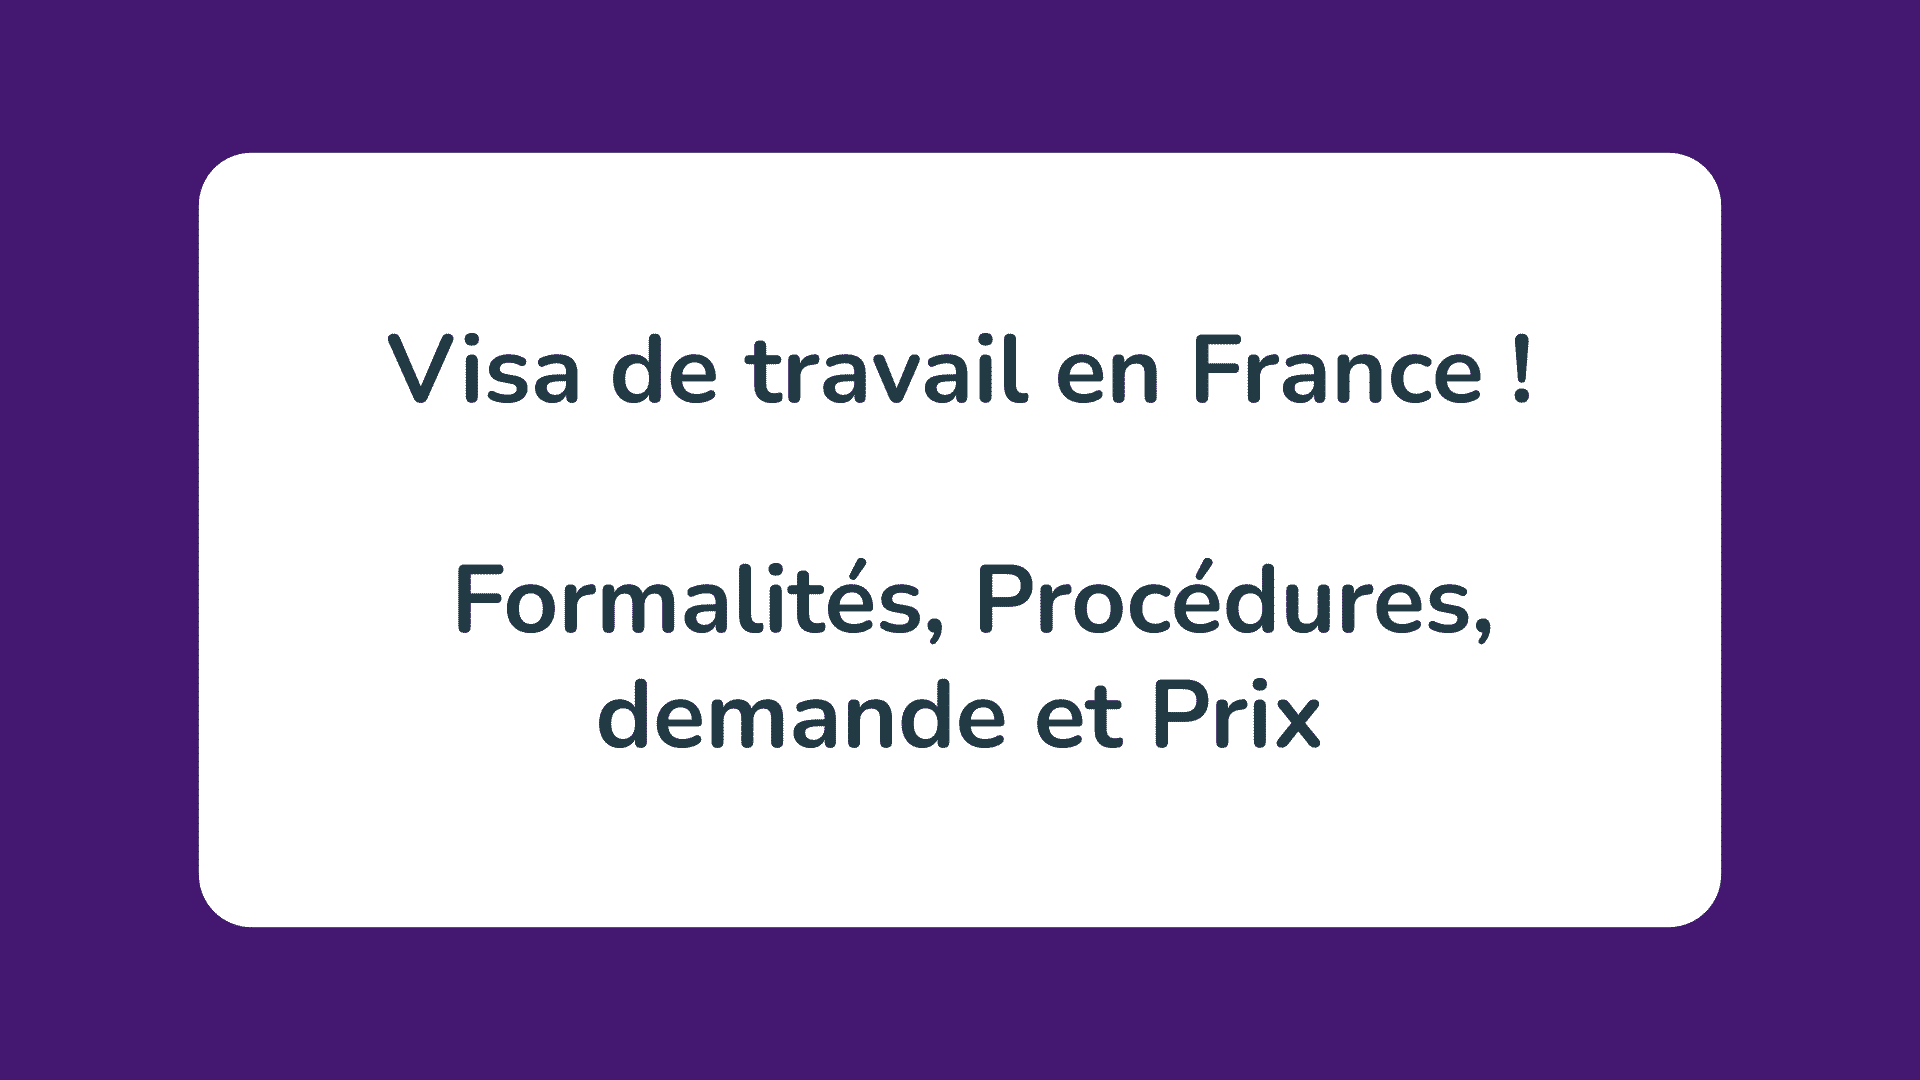 Visa de travail en France ! Formalités, Procédures, demande et Prix